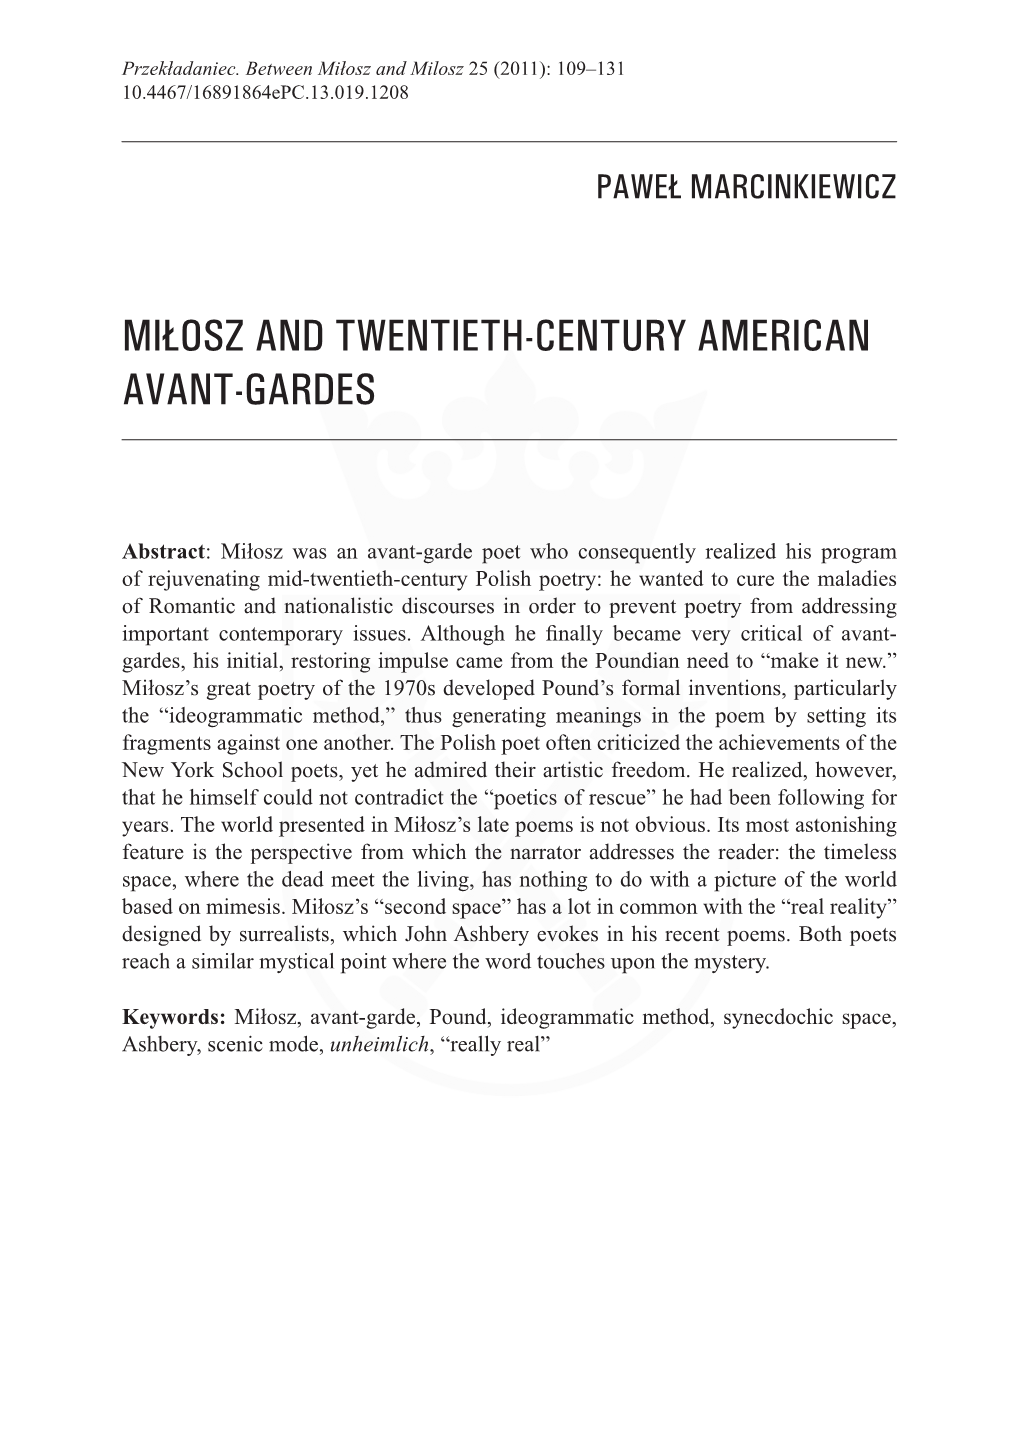 Miłosz and Twentieth-Century American Avant-Gardes